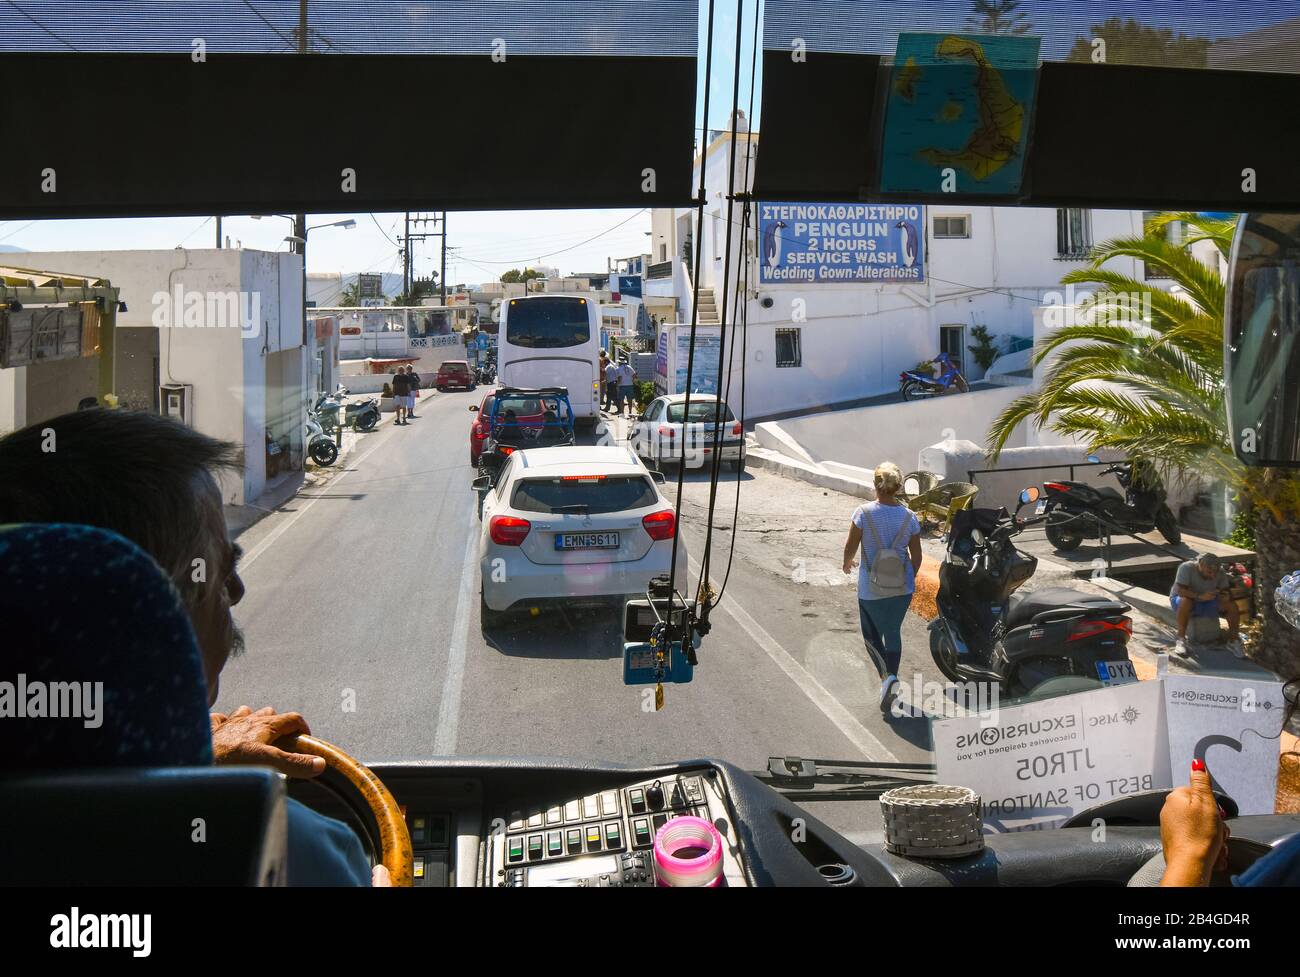 Vista dall'interno di un autobus turistico della stretta e affollata strada di negozi e aziende a Fira, conosciuta anche come Thira Grecia, sull'isola di Santorini Foto Stock